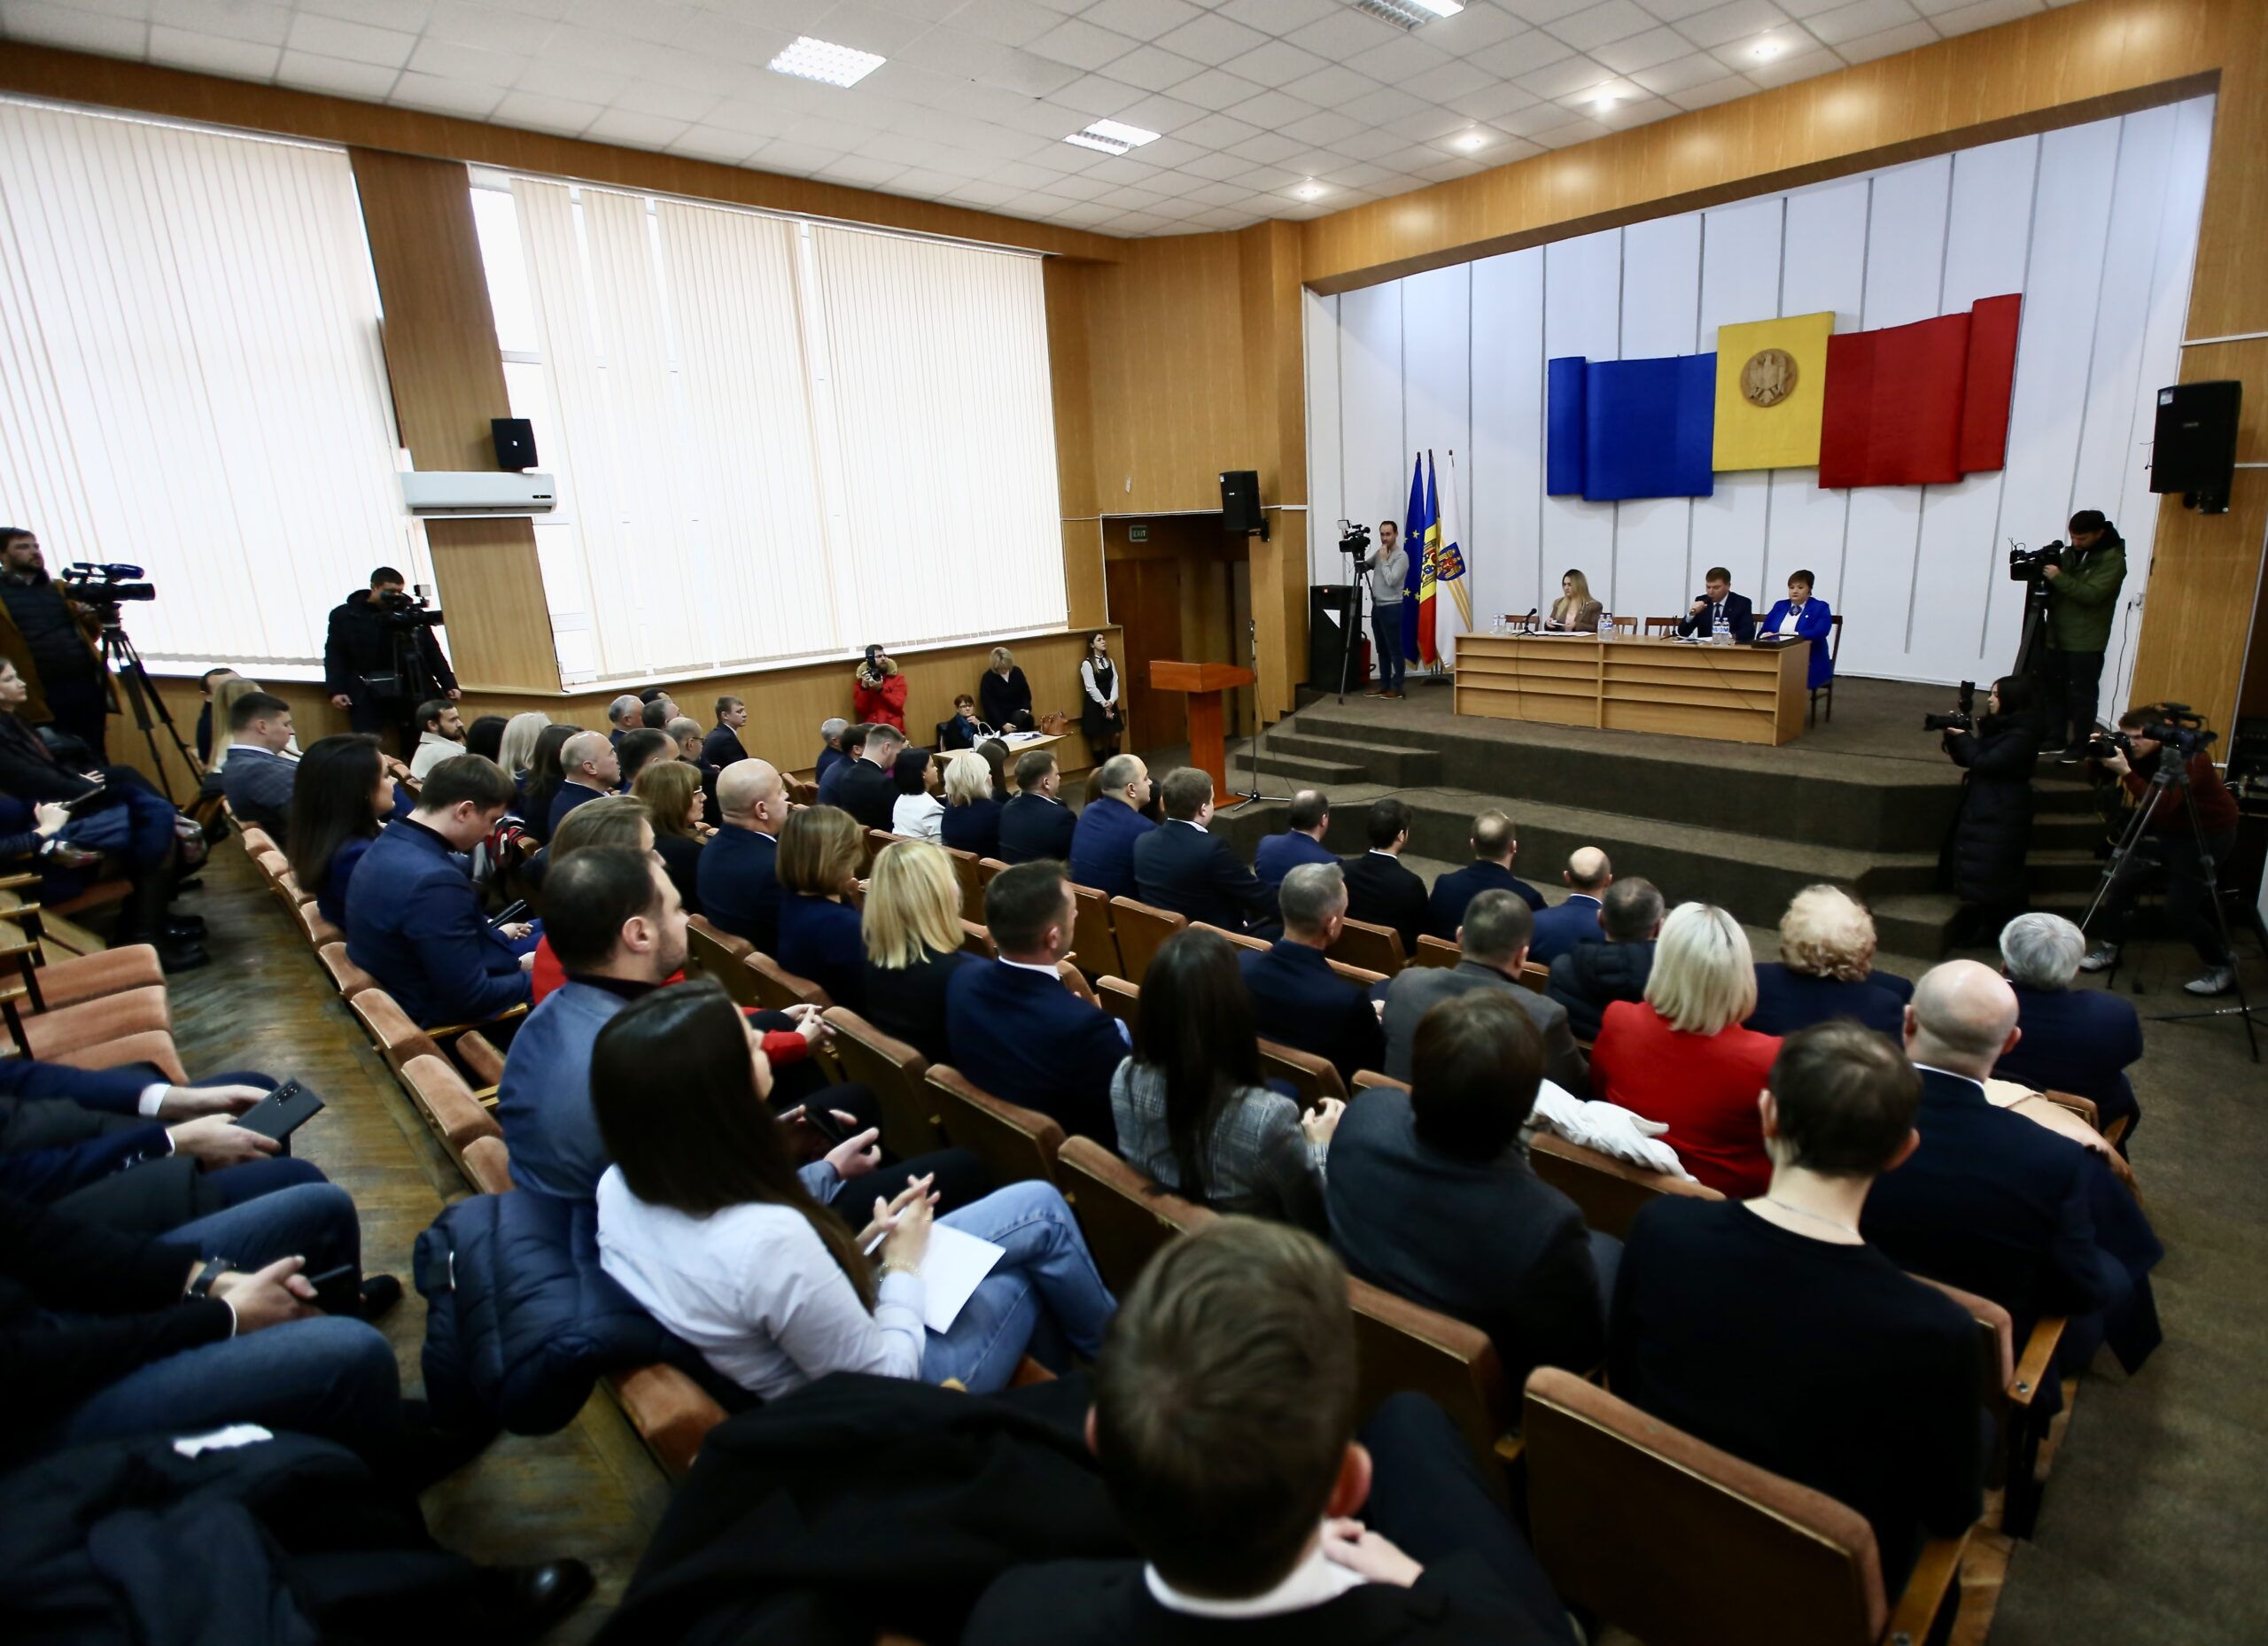 După ce și-au dat replici pe subiectul taxării, consilierii municipali din Chișinău s-au reunit la prima ședință după alegeri